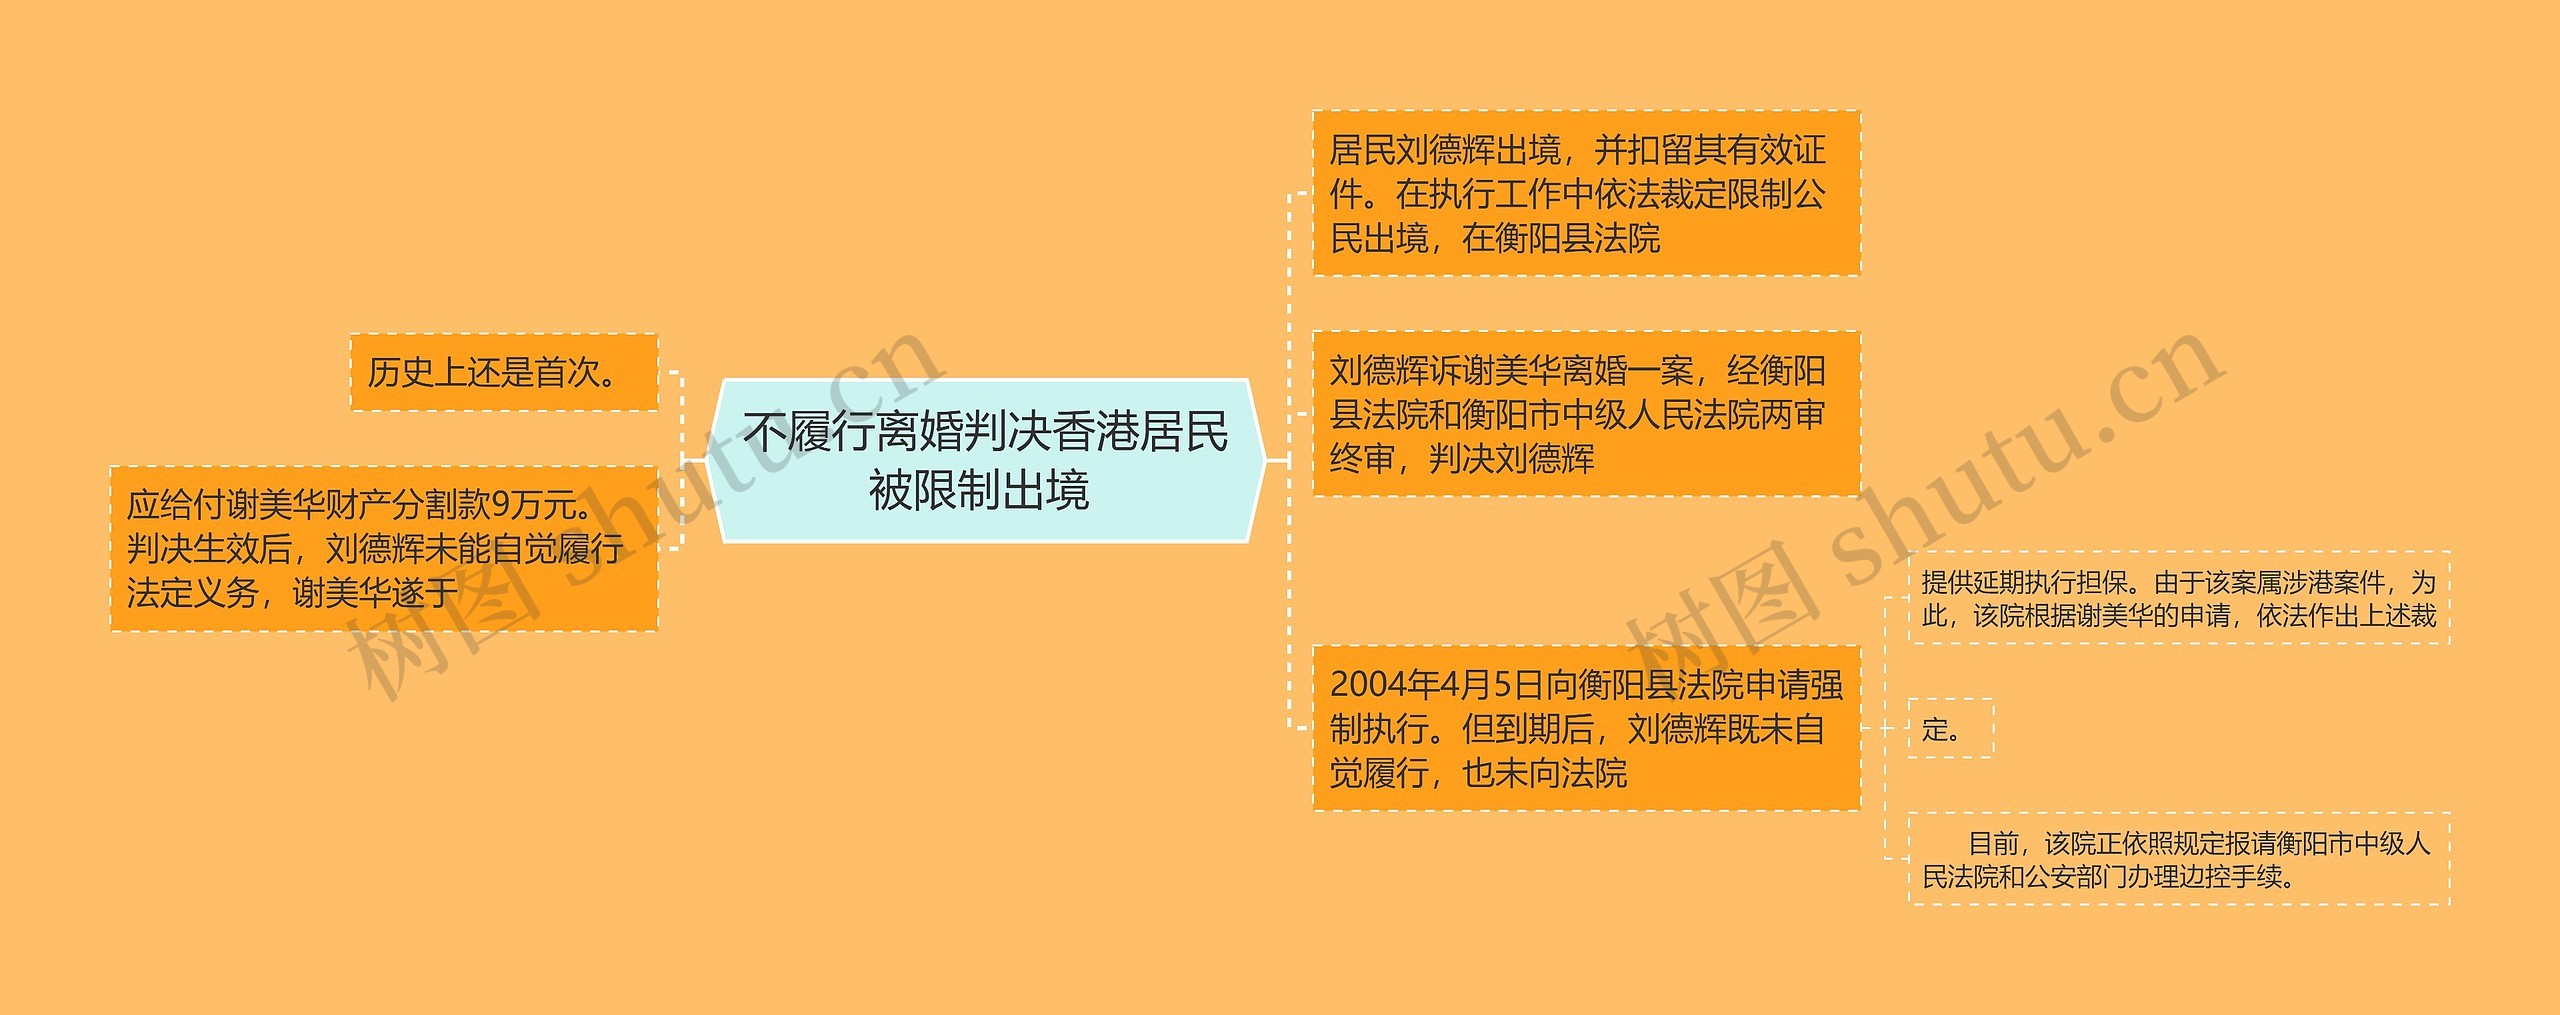 不履行离婚判决香港居民被限制出境 思维导图